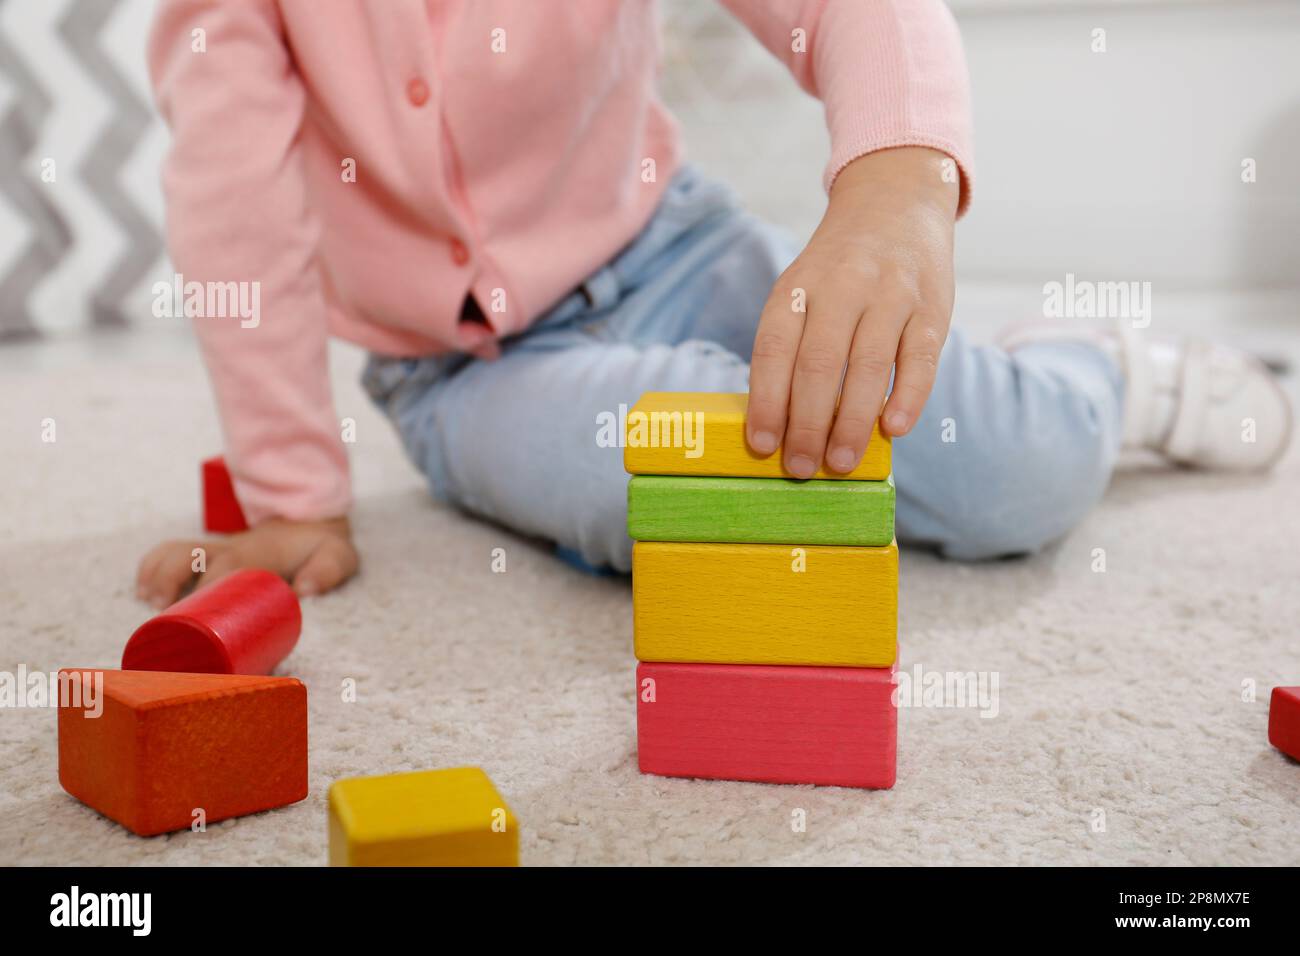 Jolie petite fille jouant avec des blocs de construction colorés à l'intérieur, gros plan Banque D'Images